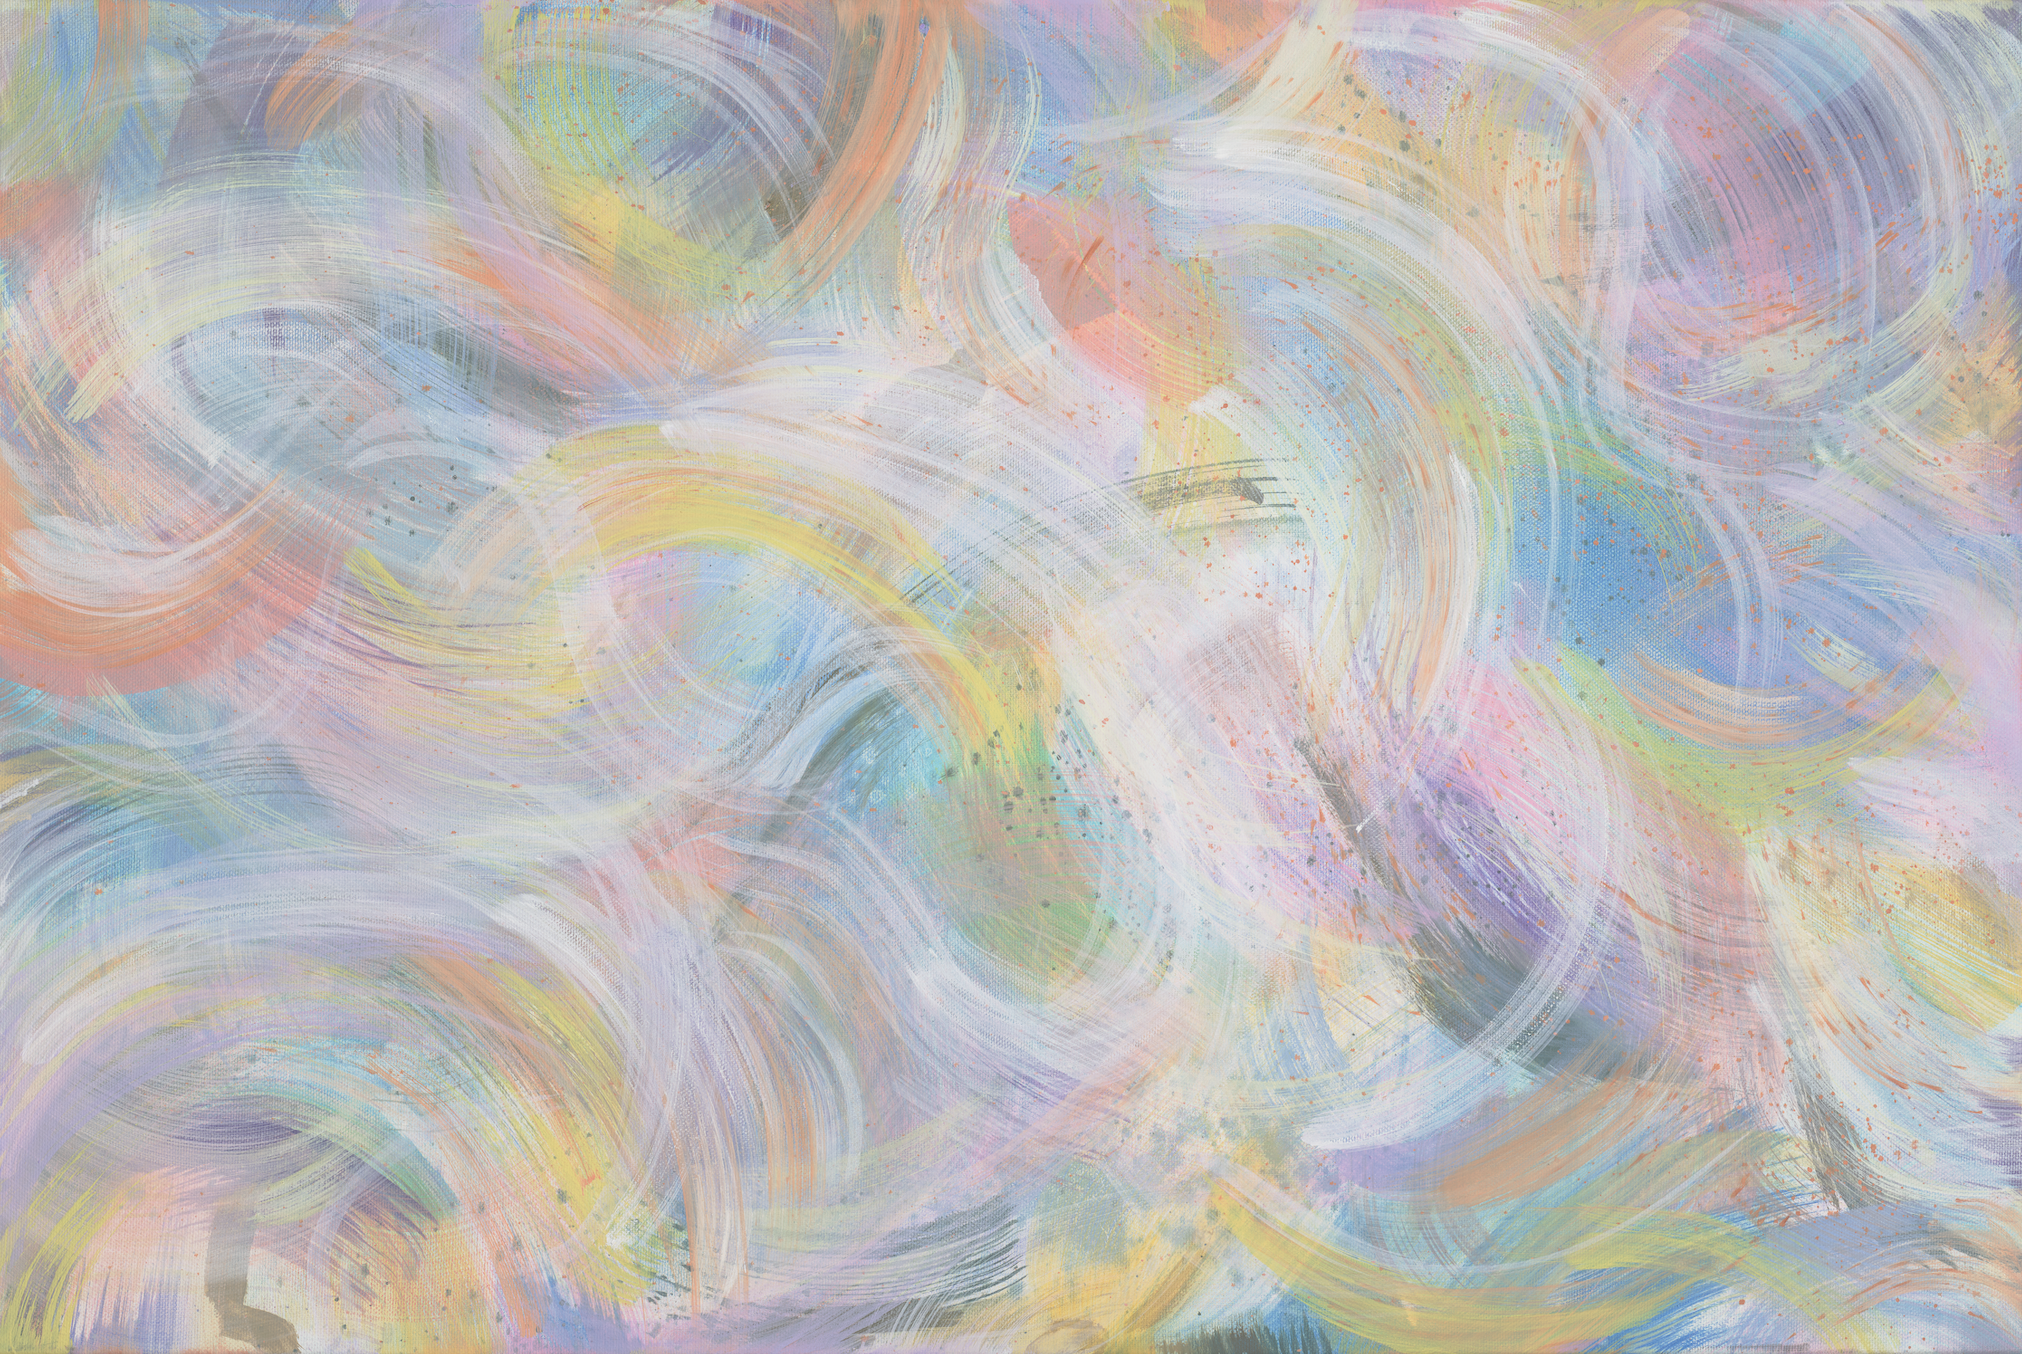 Tranh sơn dầu trừu tượng gió bão sẽ khiến bạn thấy ngạc nhiên bởi vẻ đẹp kỳ lạ của nó. Những dòng gió bão bí ẩn được tái hiện bằng những nét vẽ tỉ mỉ và rõ ràng trong tranh sơn dầu trừu tượng. Hãy xem hình ảnh để chiêm ngưỡng những tác phẩm tranh sơn dầu trừu tượng gió bão đẹp nhất.